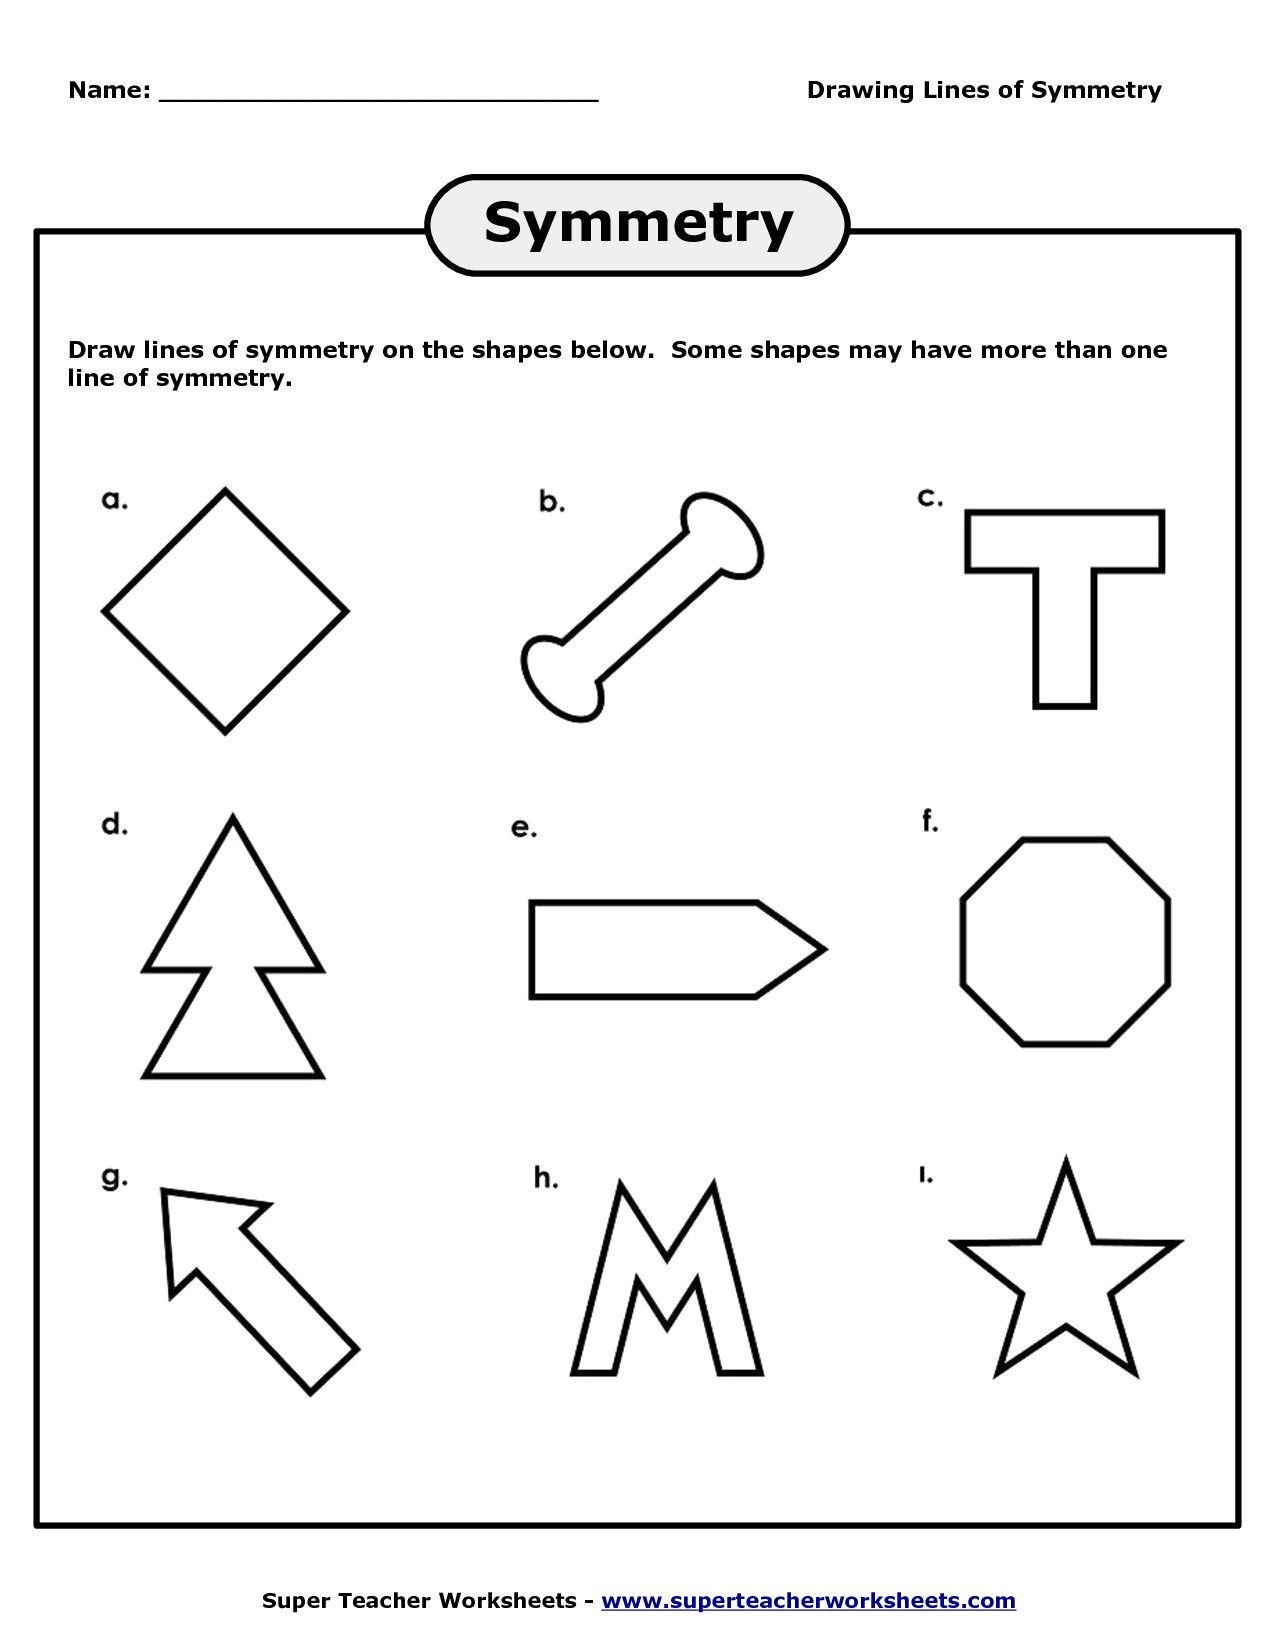 Line Of Symmetry Worksheet Drawing Lines Symmetry Worksheets 4 with Worksheet within